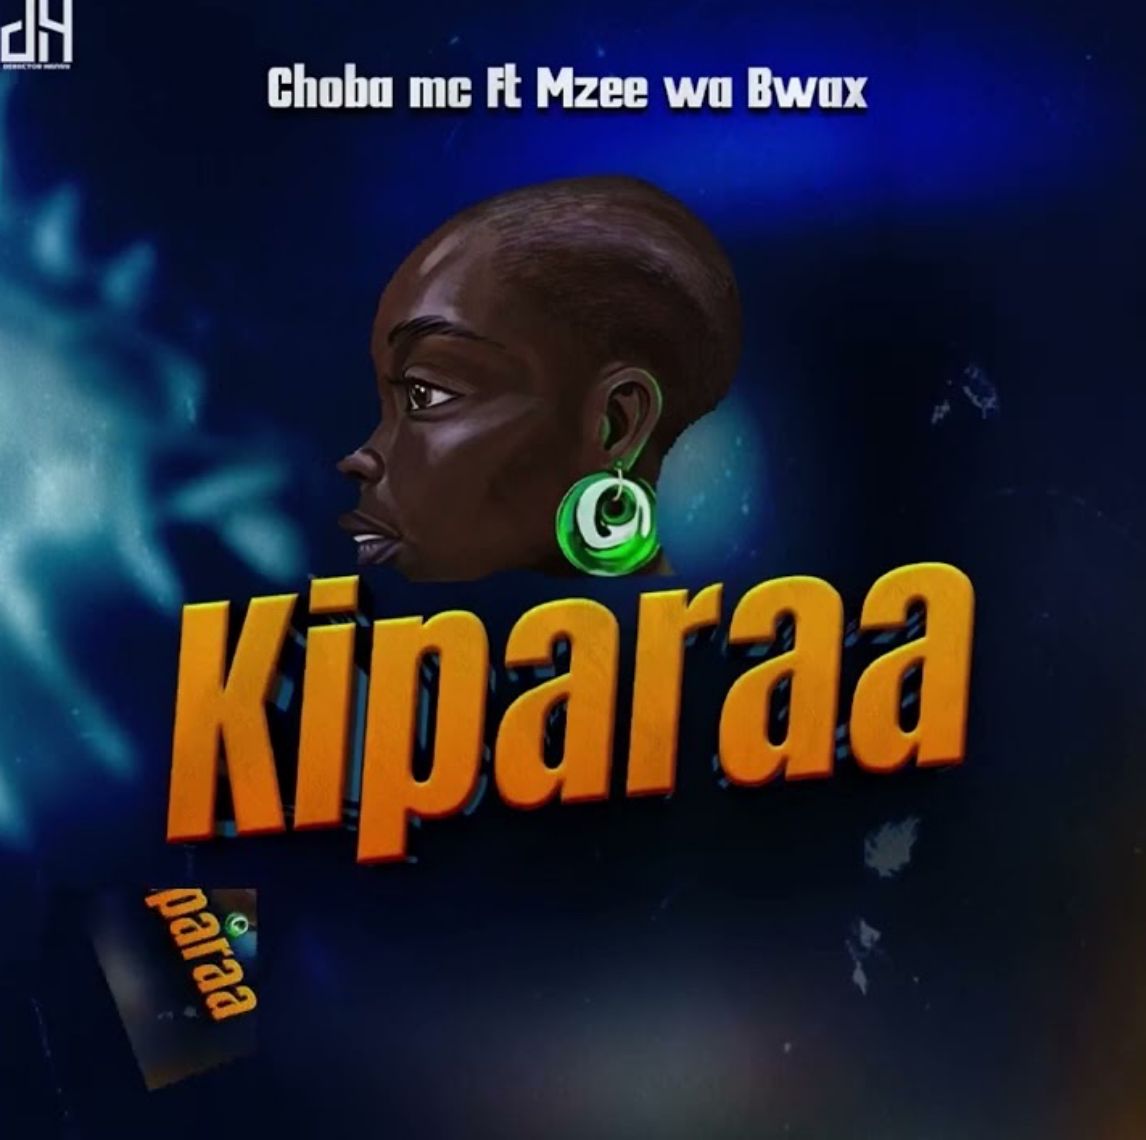 Download Audio | Choba Mc Ft. Mzee wa Bwax – Kiparaa